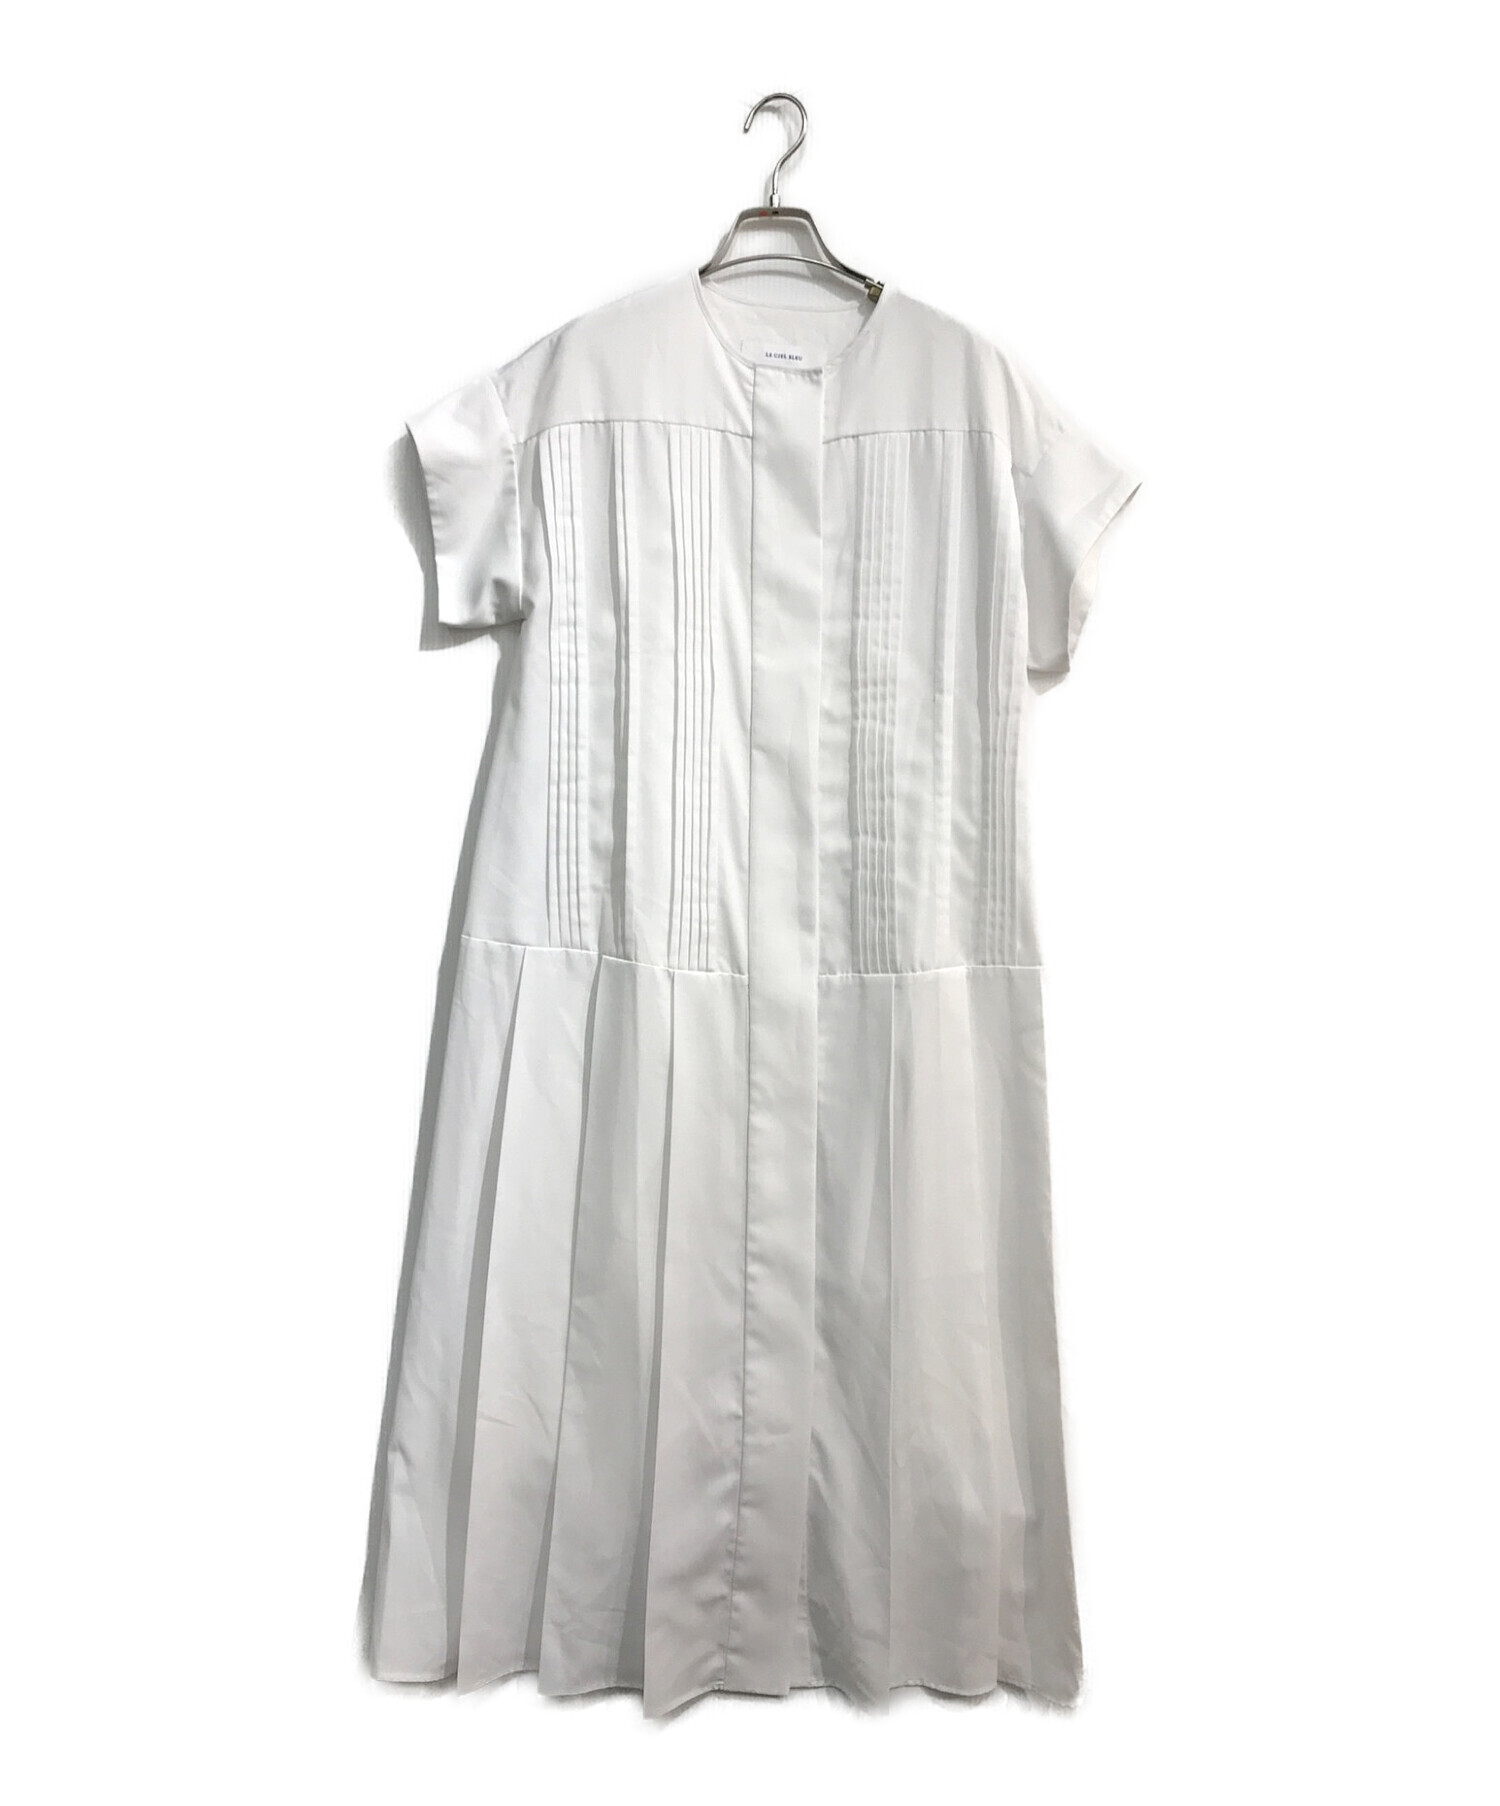 LE CIEL BLEU (ルシェルブルー) PinTuck & Pleats Dress 23A65307 ピンタックプリーツドレス ホワイト  サイズ:36